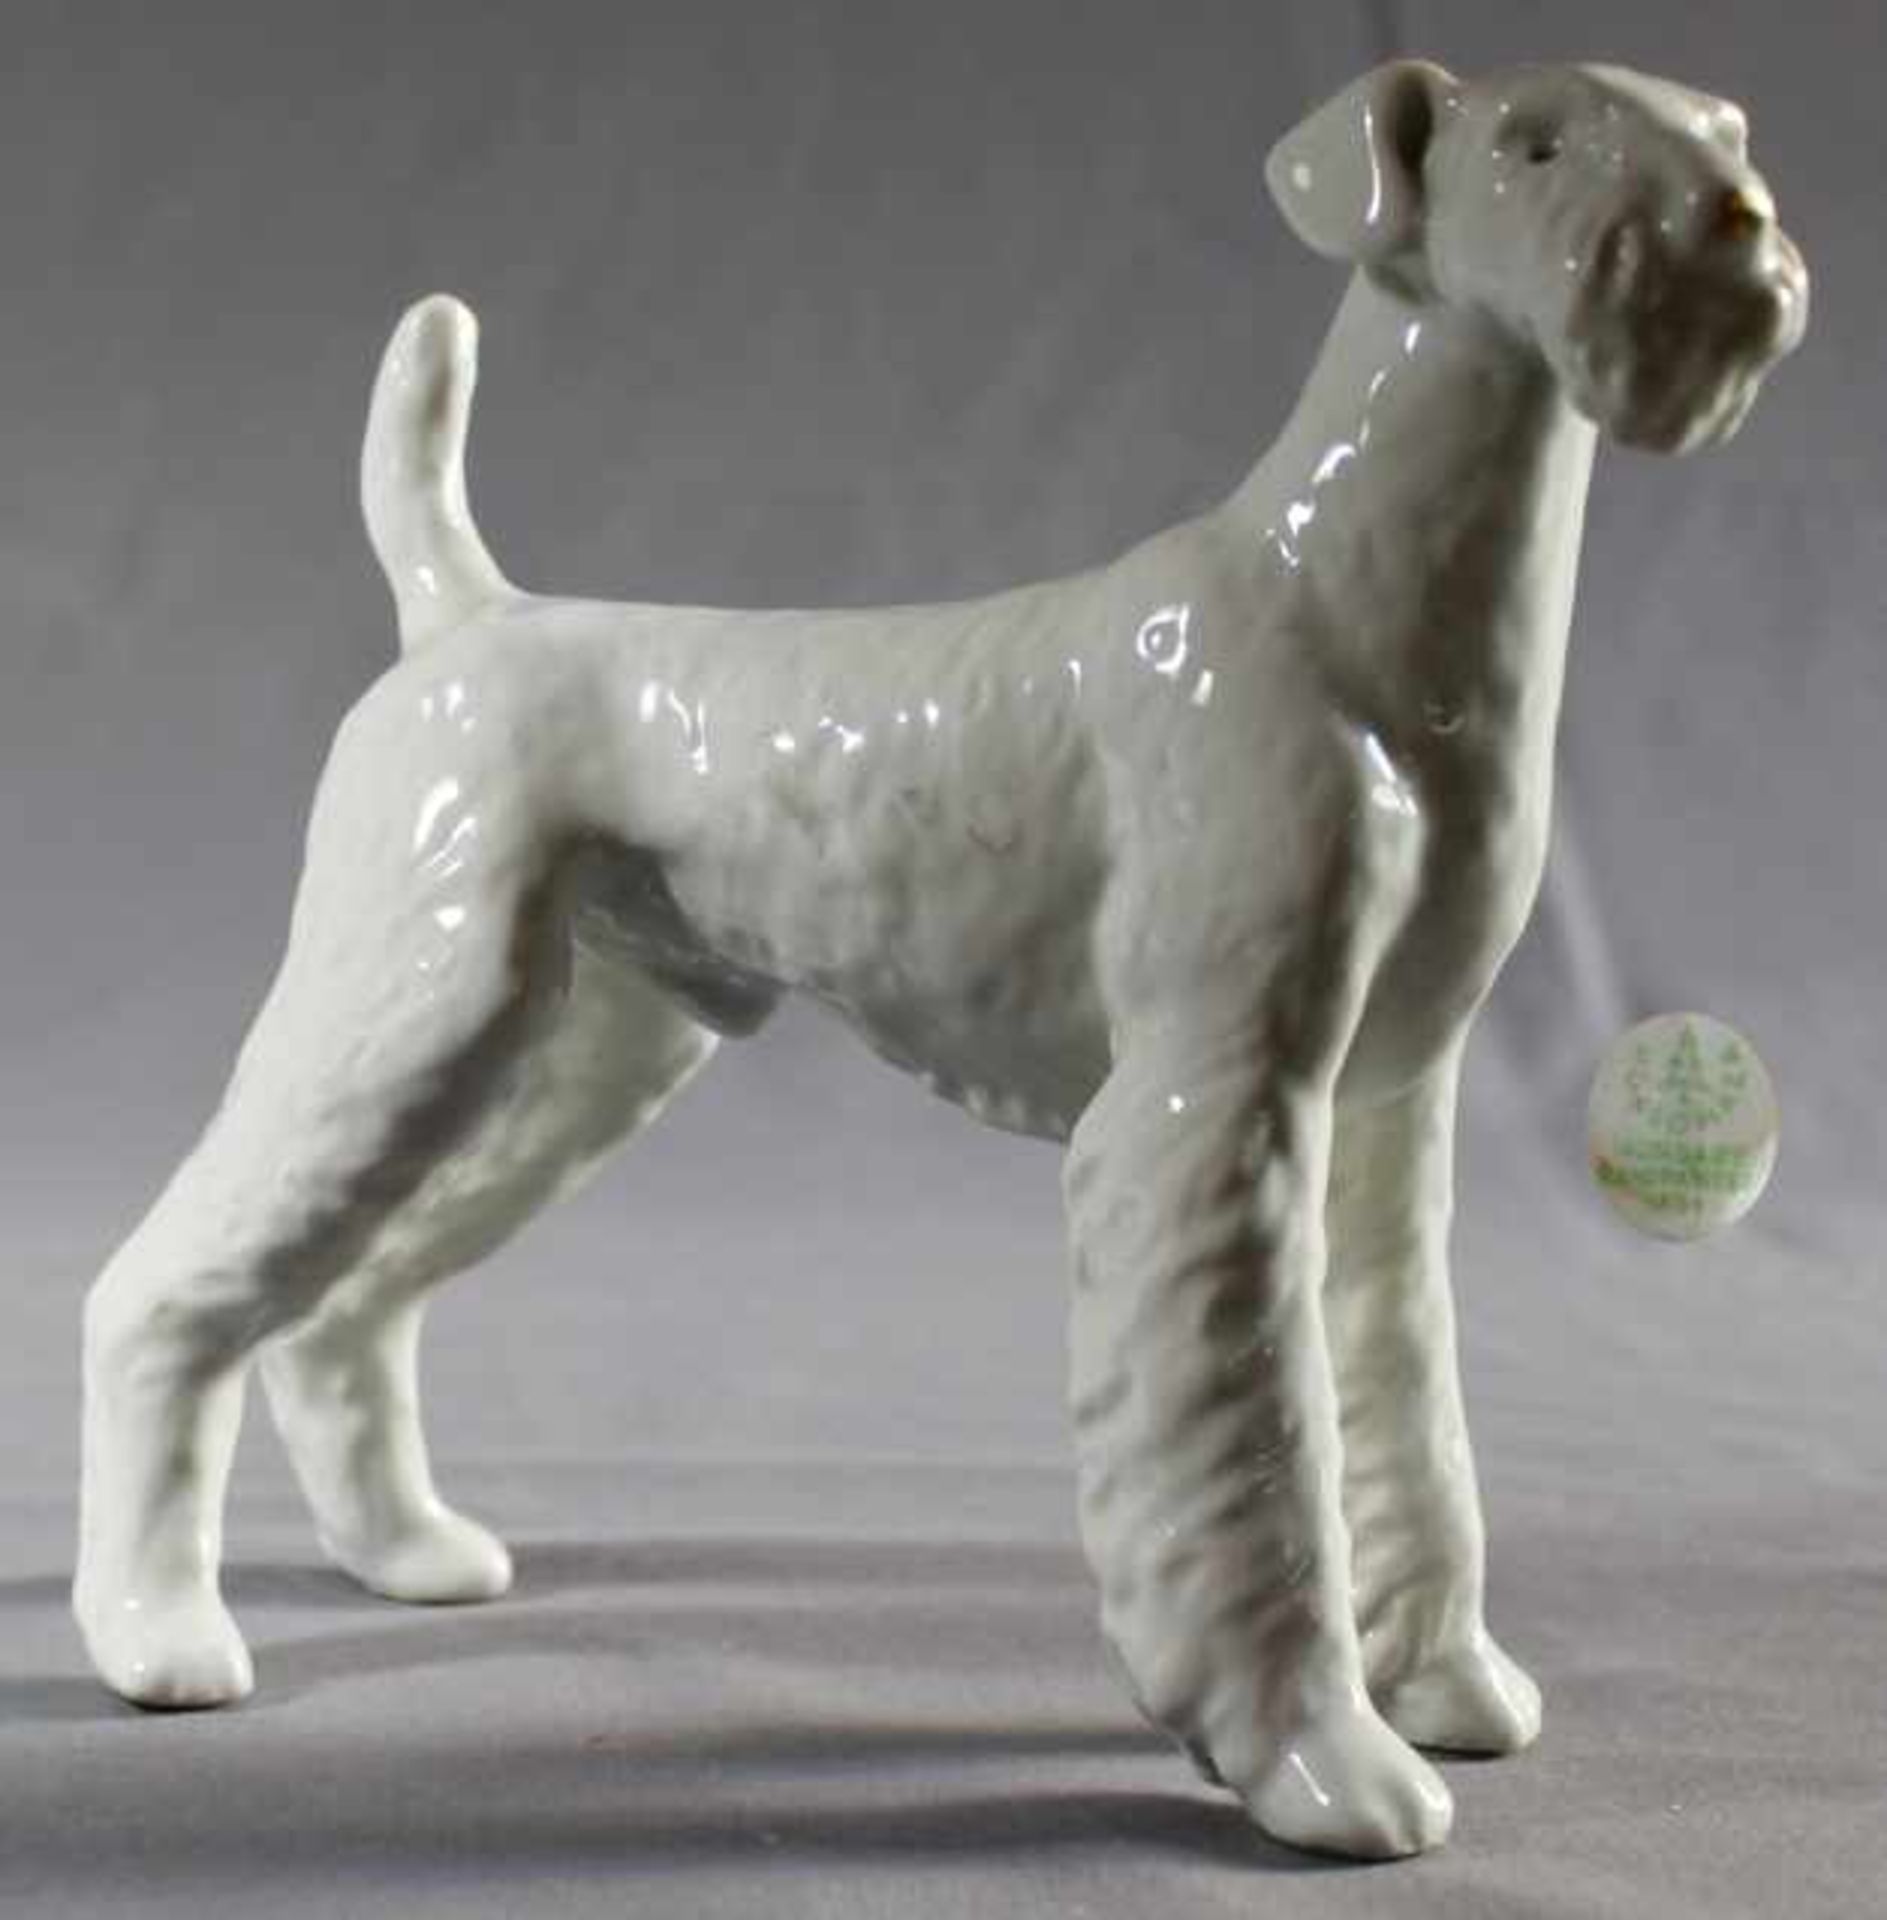 1 Porzellanfigur, weiß "Hund, Hollohaza Ungarn", H ca. 17,5cm, L ca. 21,5cm- - -23.50 % buyer's